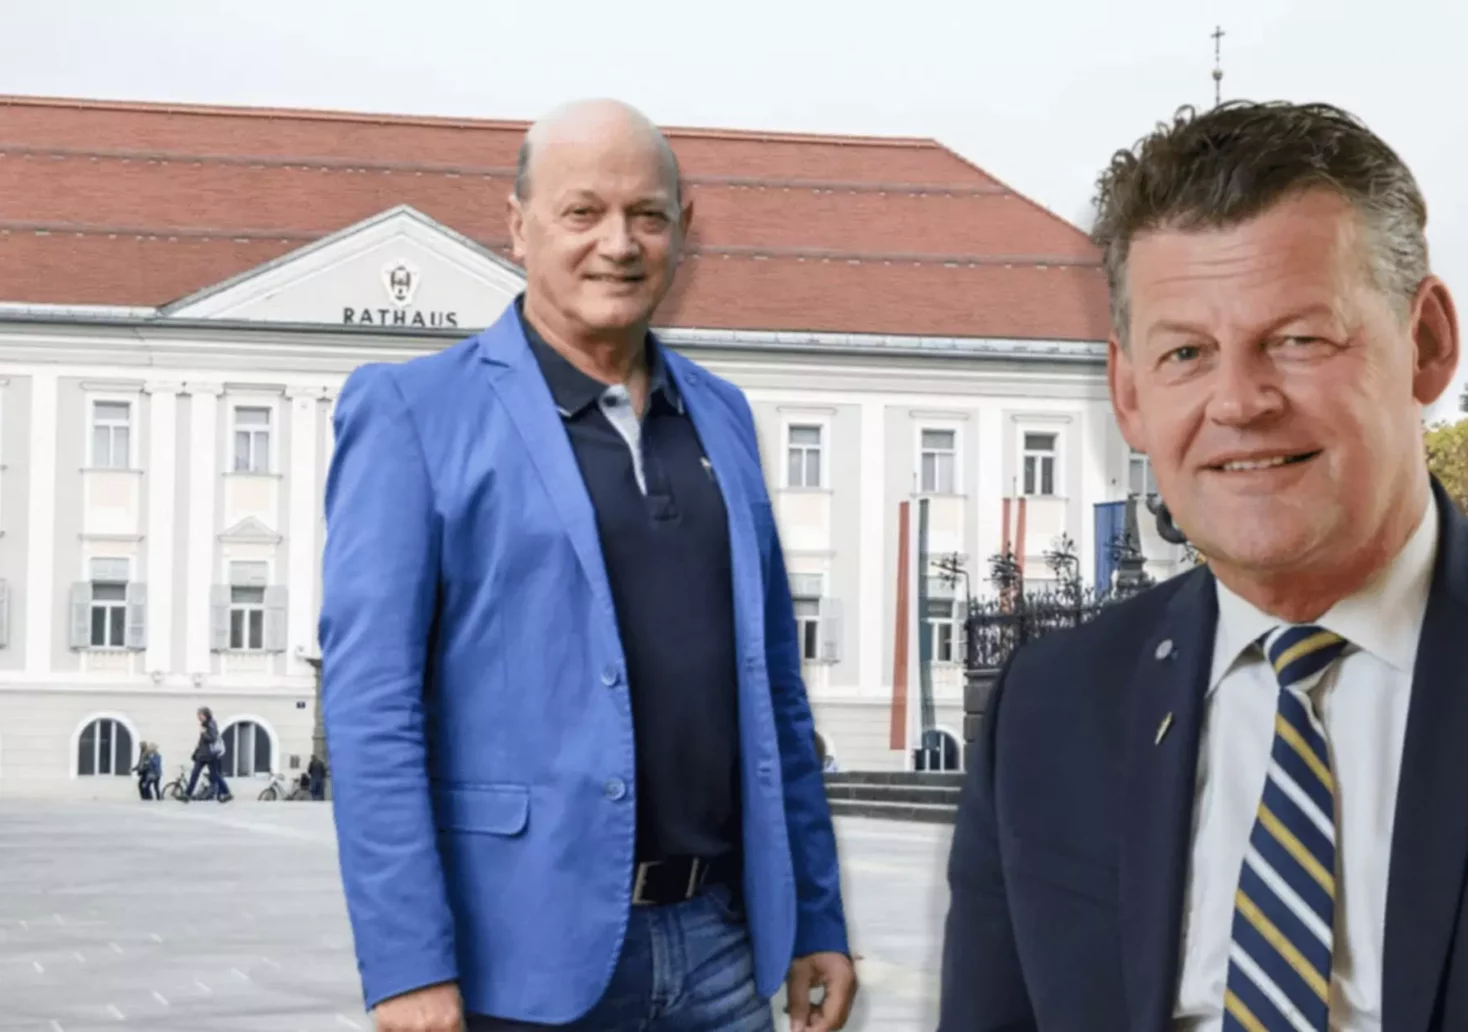 Eine Bildmontage auf 5min.at zeigt den ehemaligen Magistratsdirektor Jost und Bürgermeister Scheider vor dem Klagenfurter Rathaus.